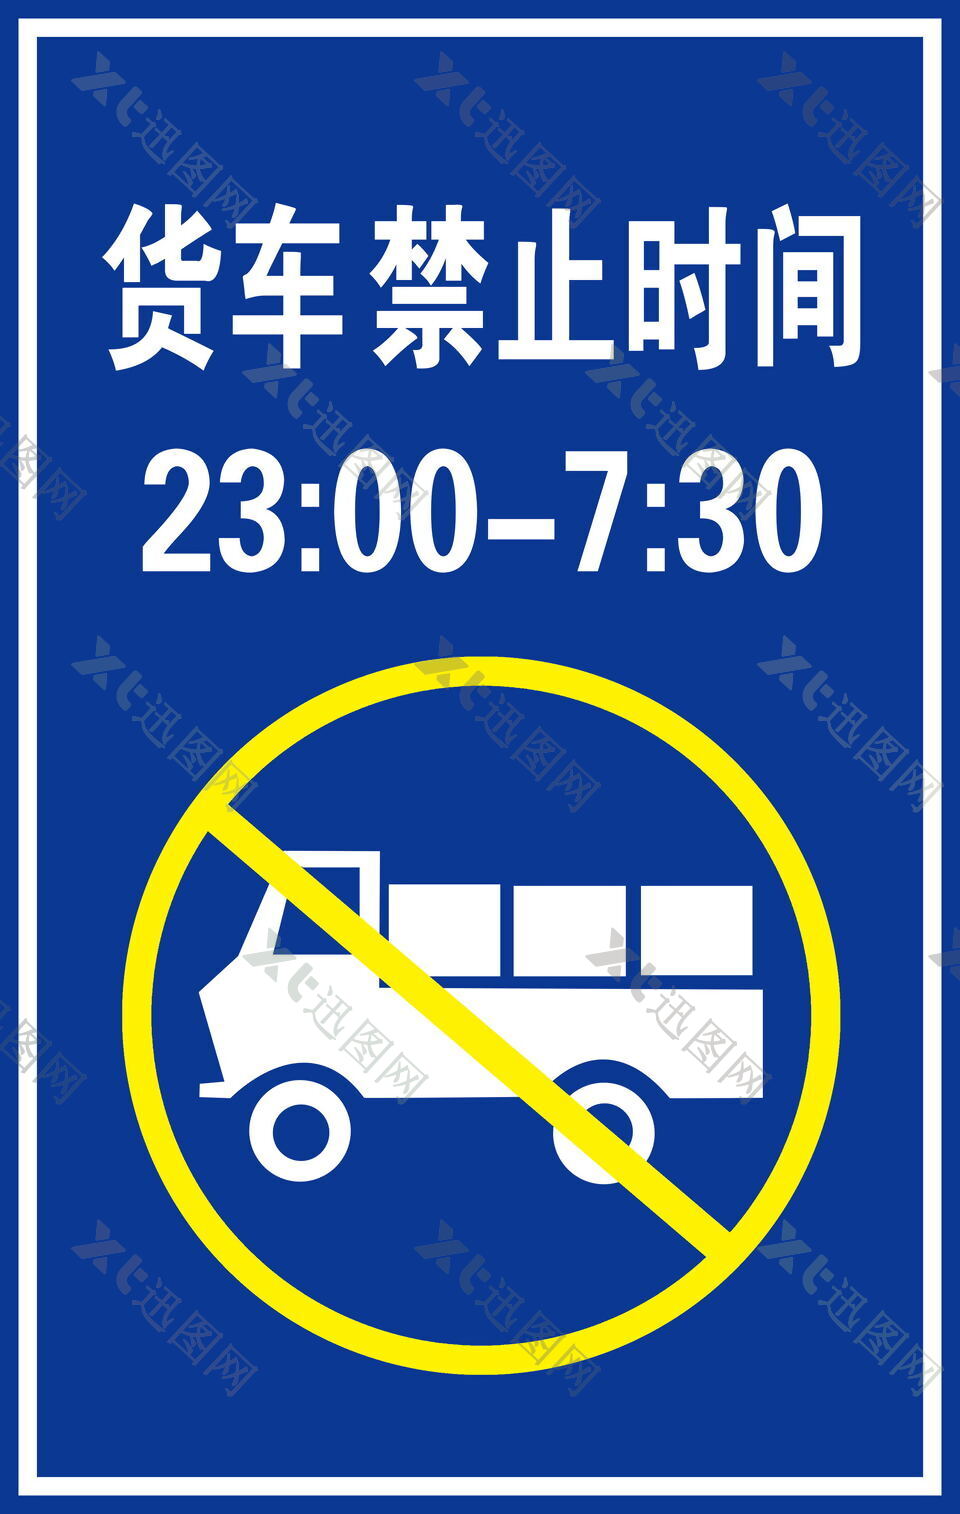 货车禁止时间